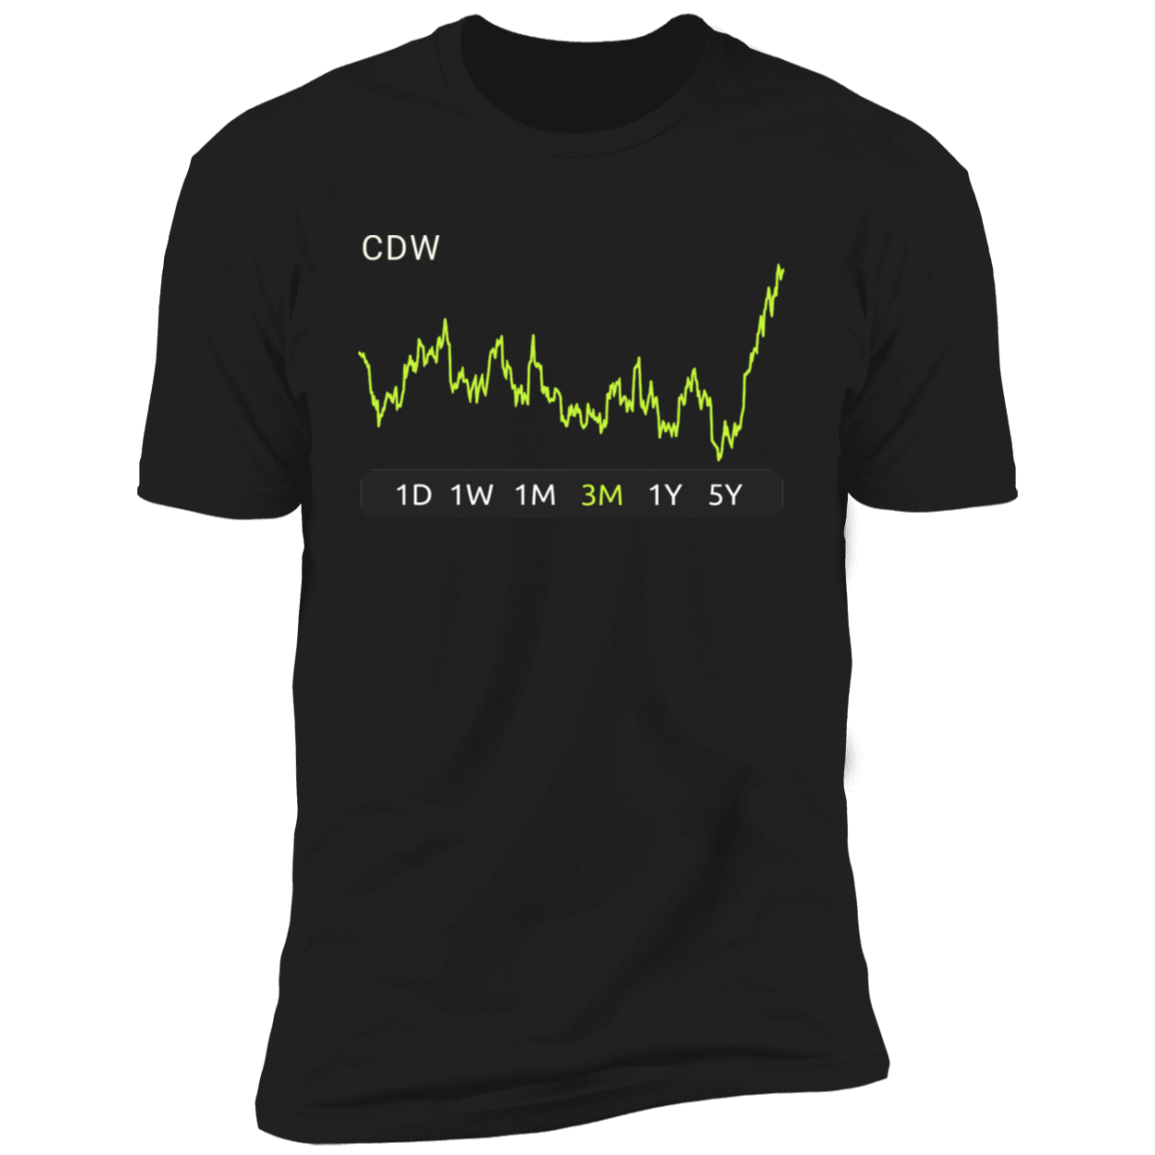 CDW Stock 3m Premium T-Shirt